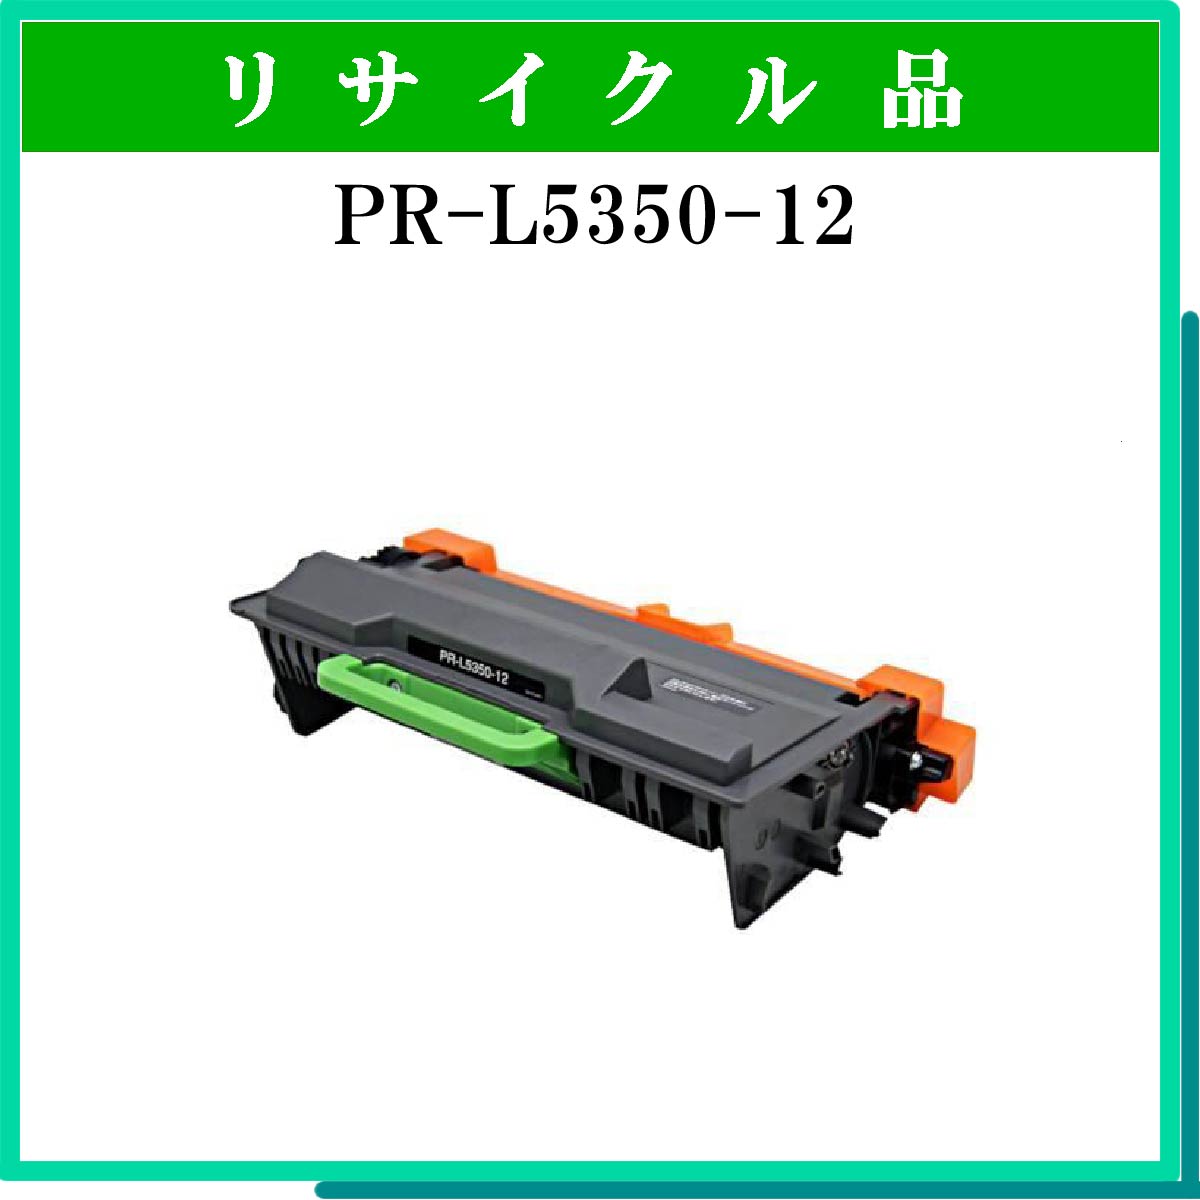 PR-L5350-12